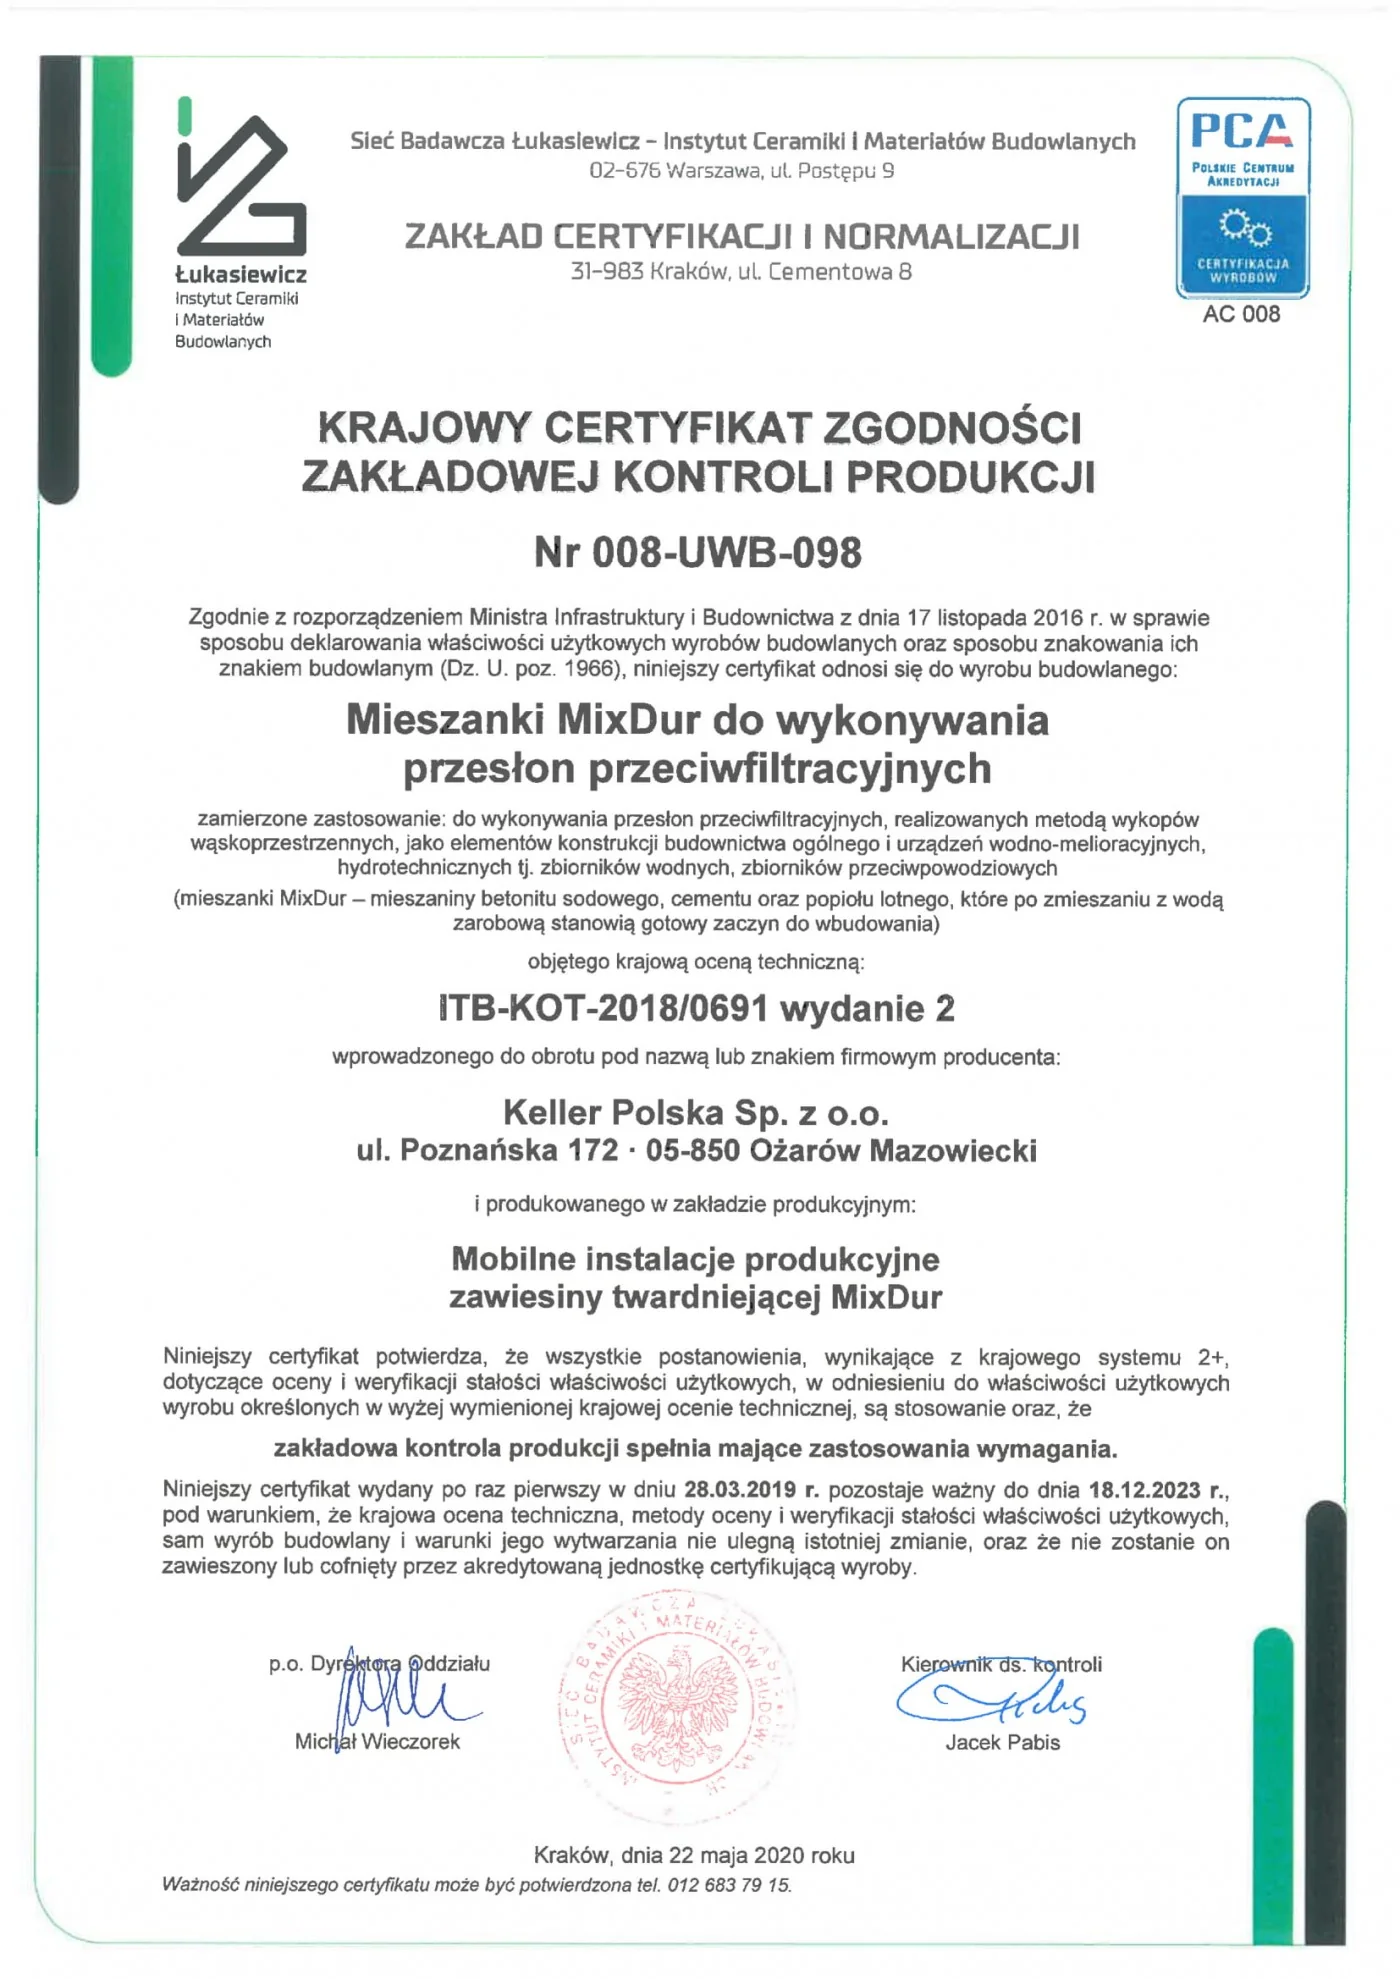 Krajowy Certyfikat Zgodności ZKP Nr 008-UWB-098